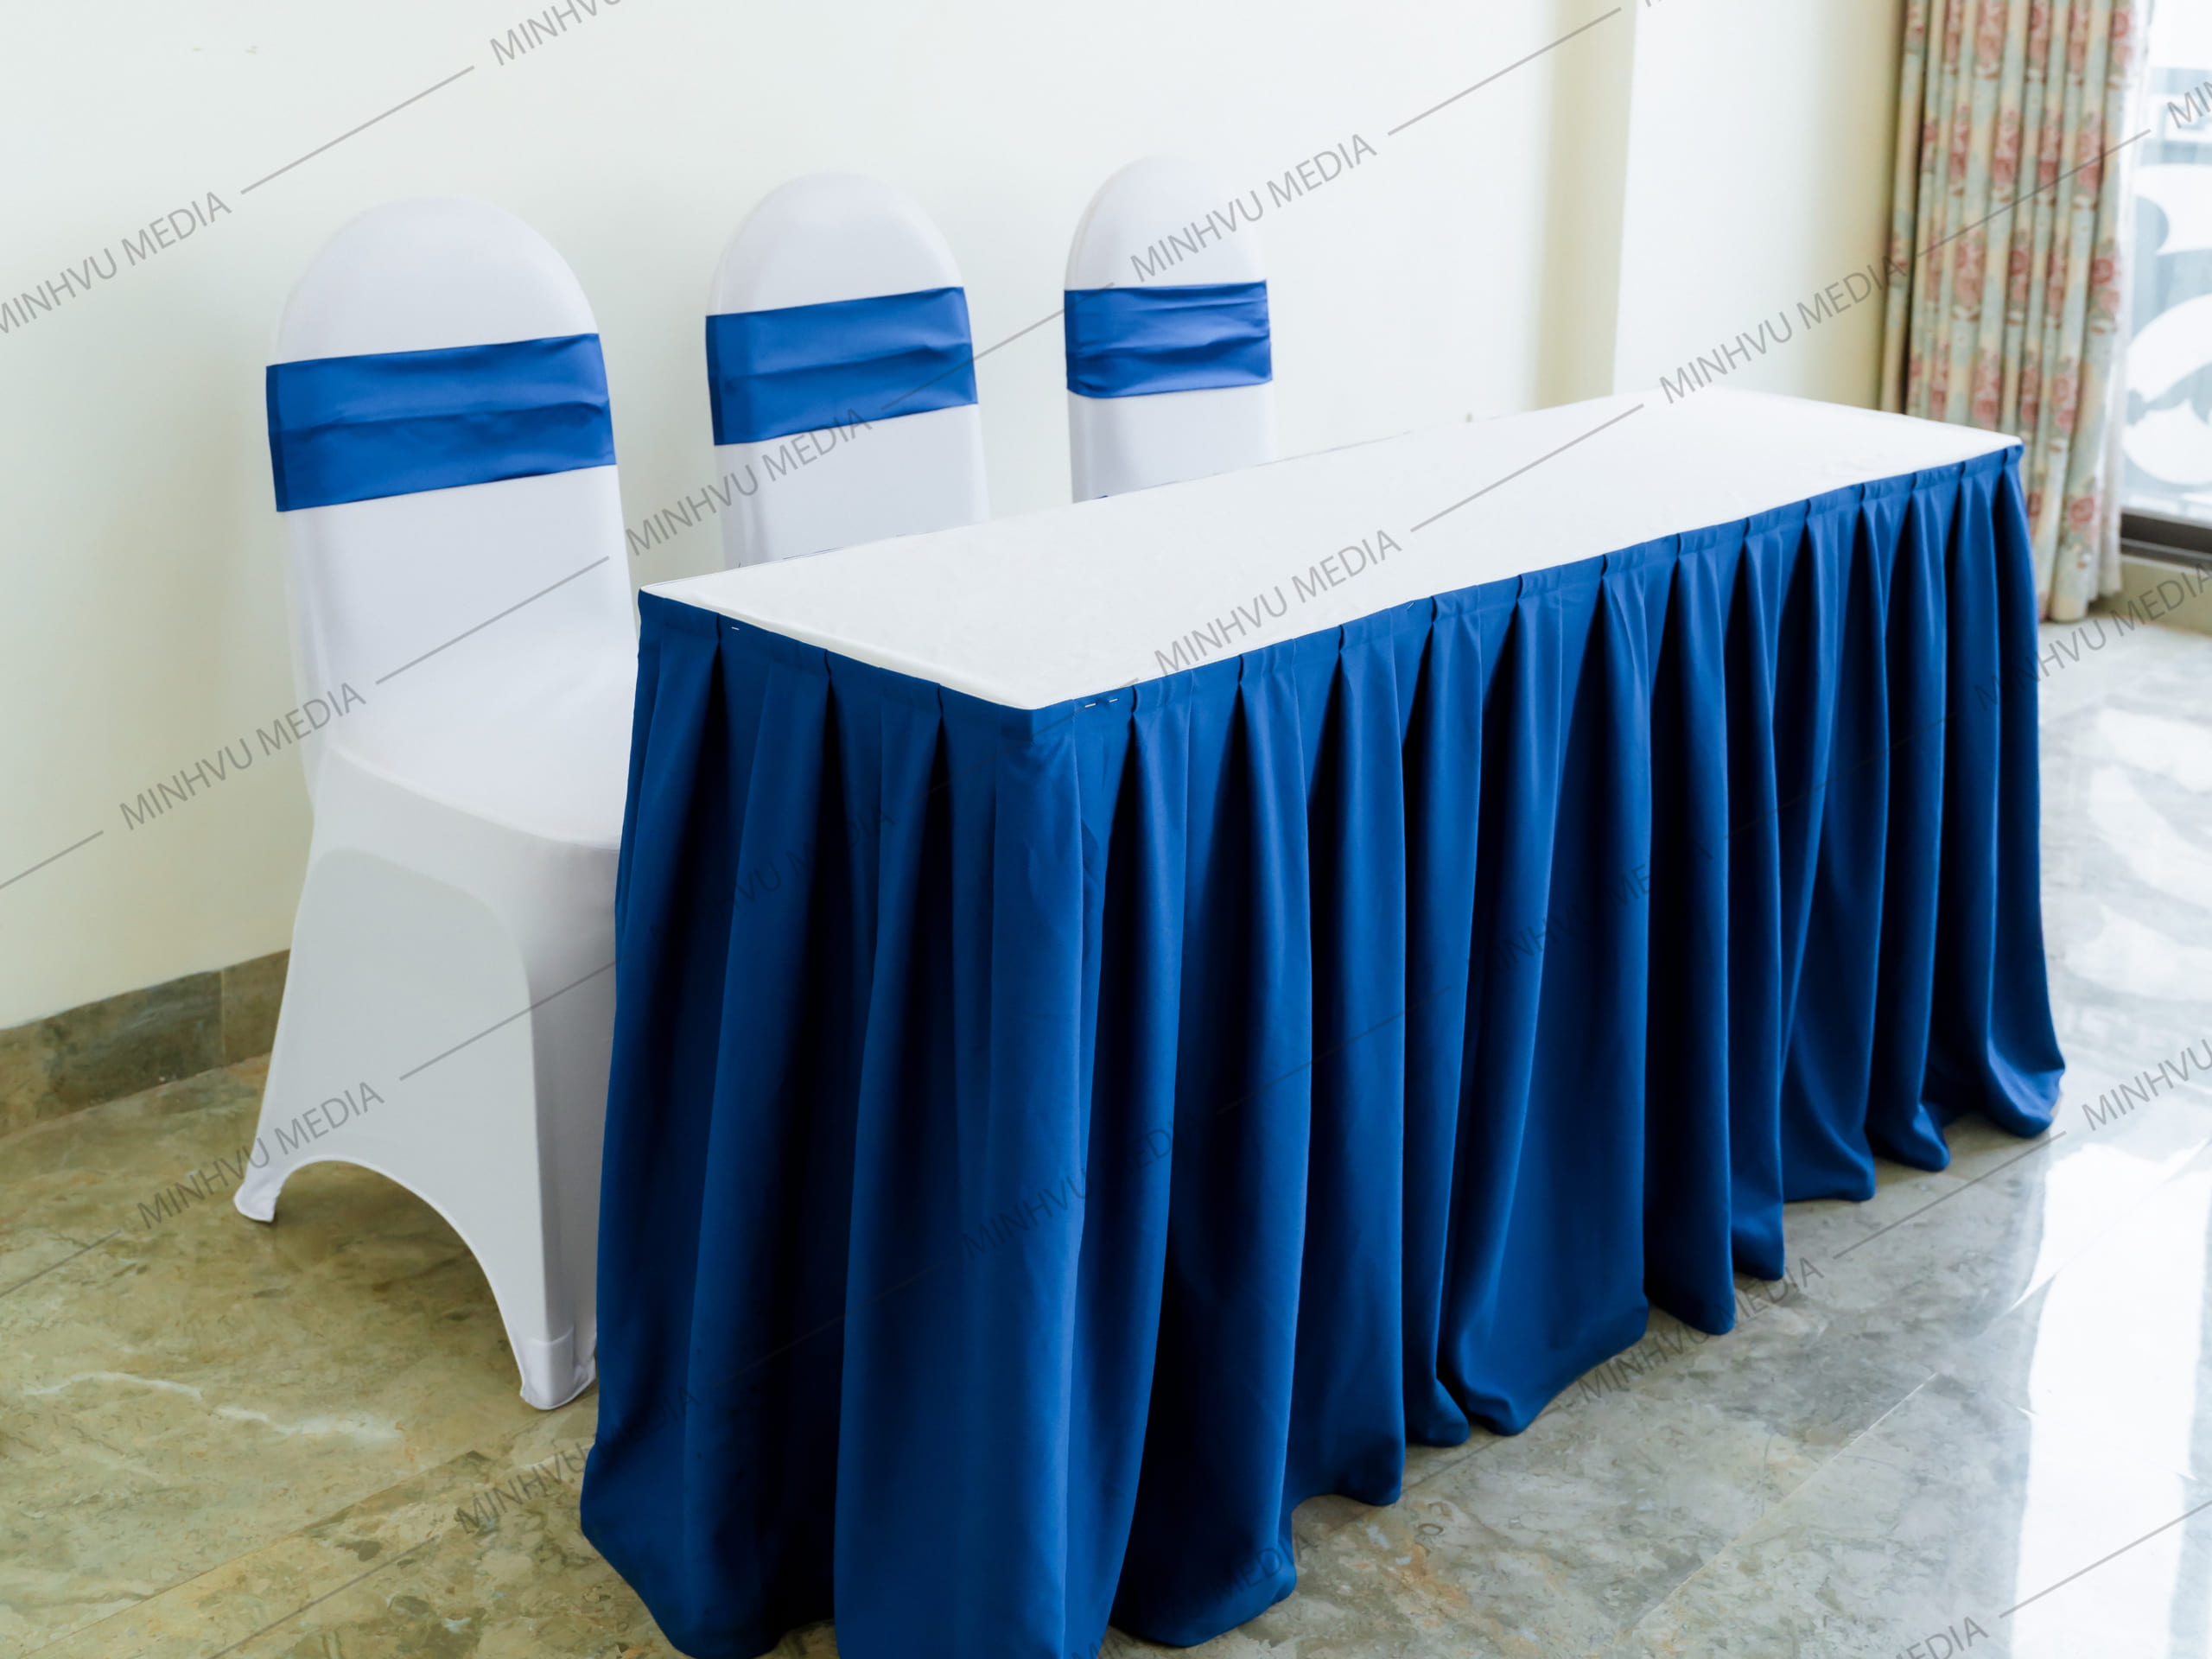 Bộ bàn ghế banquet chữ nhật trắng nơ xanh dương